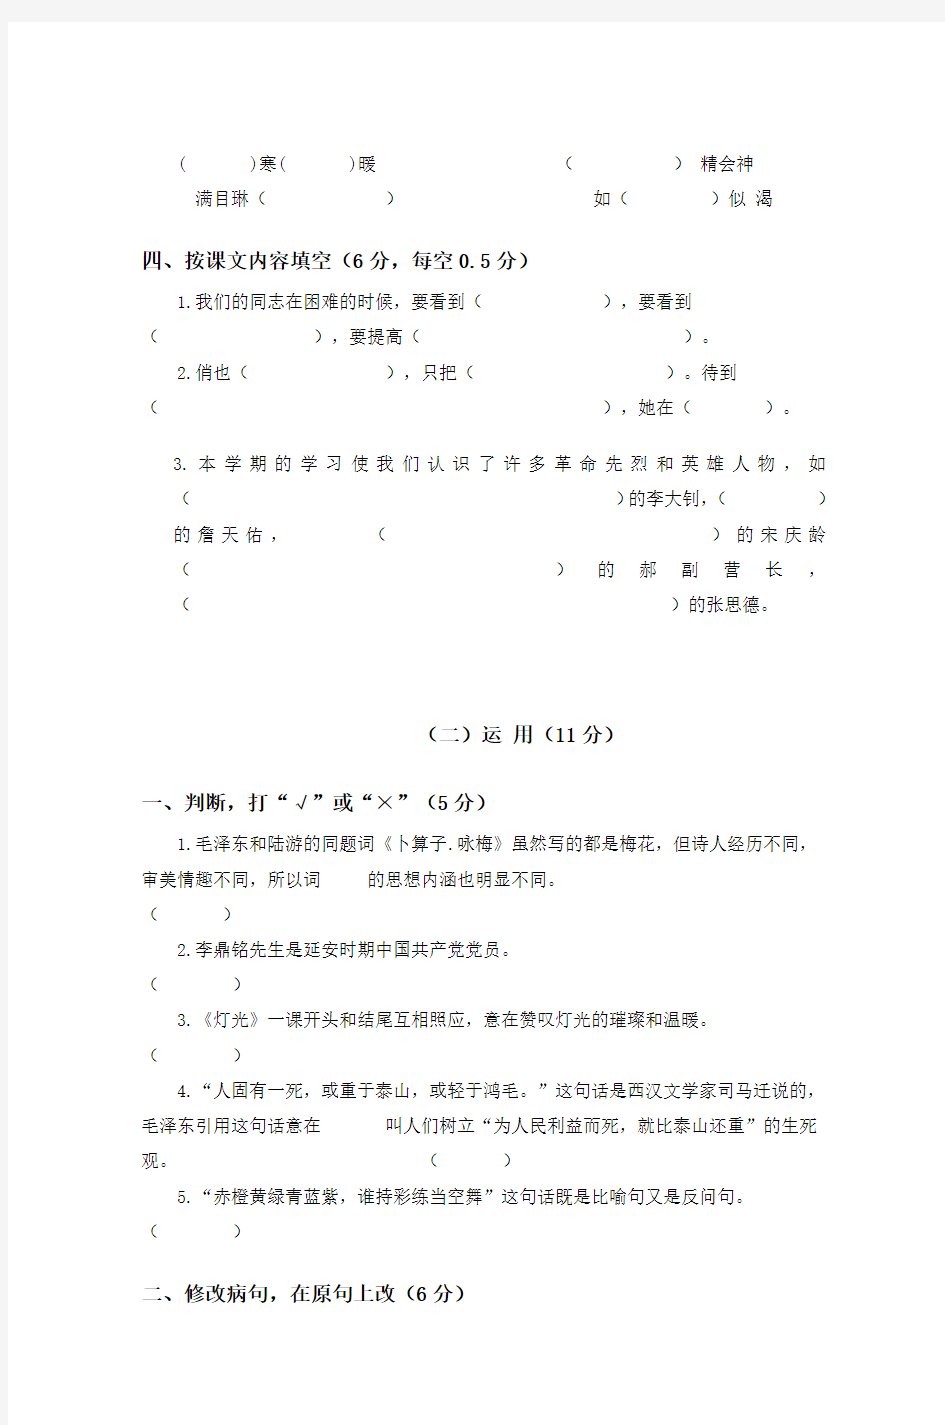 安徽省望江县第一小学六年级语文上册第一二